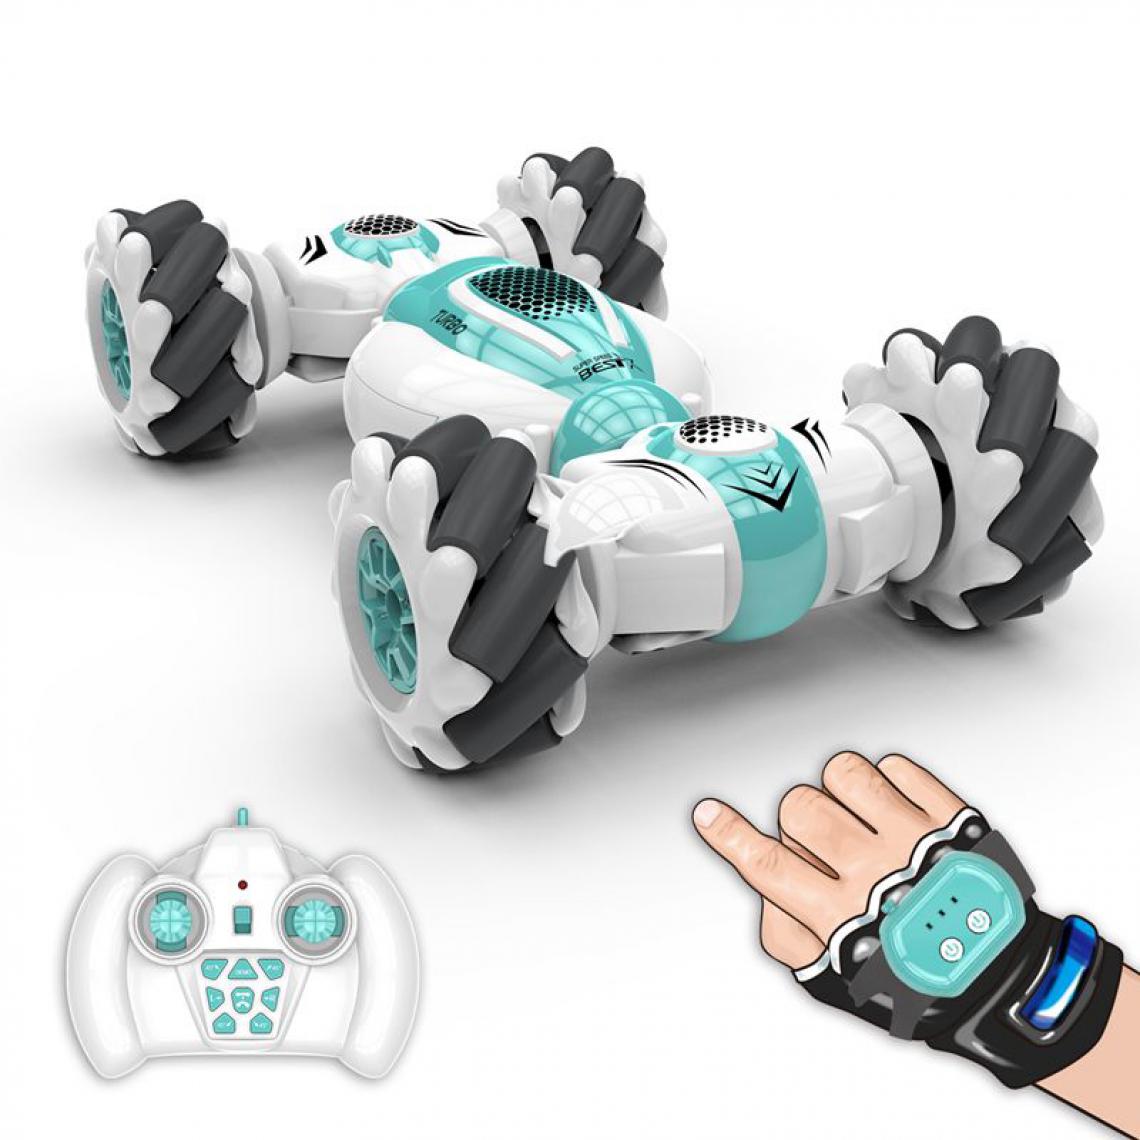 Generic - Mini voiture cascadeuse télécommandée LBLA , terrain ,contrôlé bracelet,  15  *11.5 * 7  cm - Vert  - Véhicule électrique pour enfant